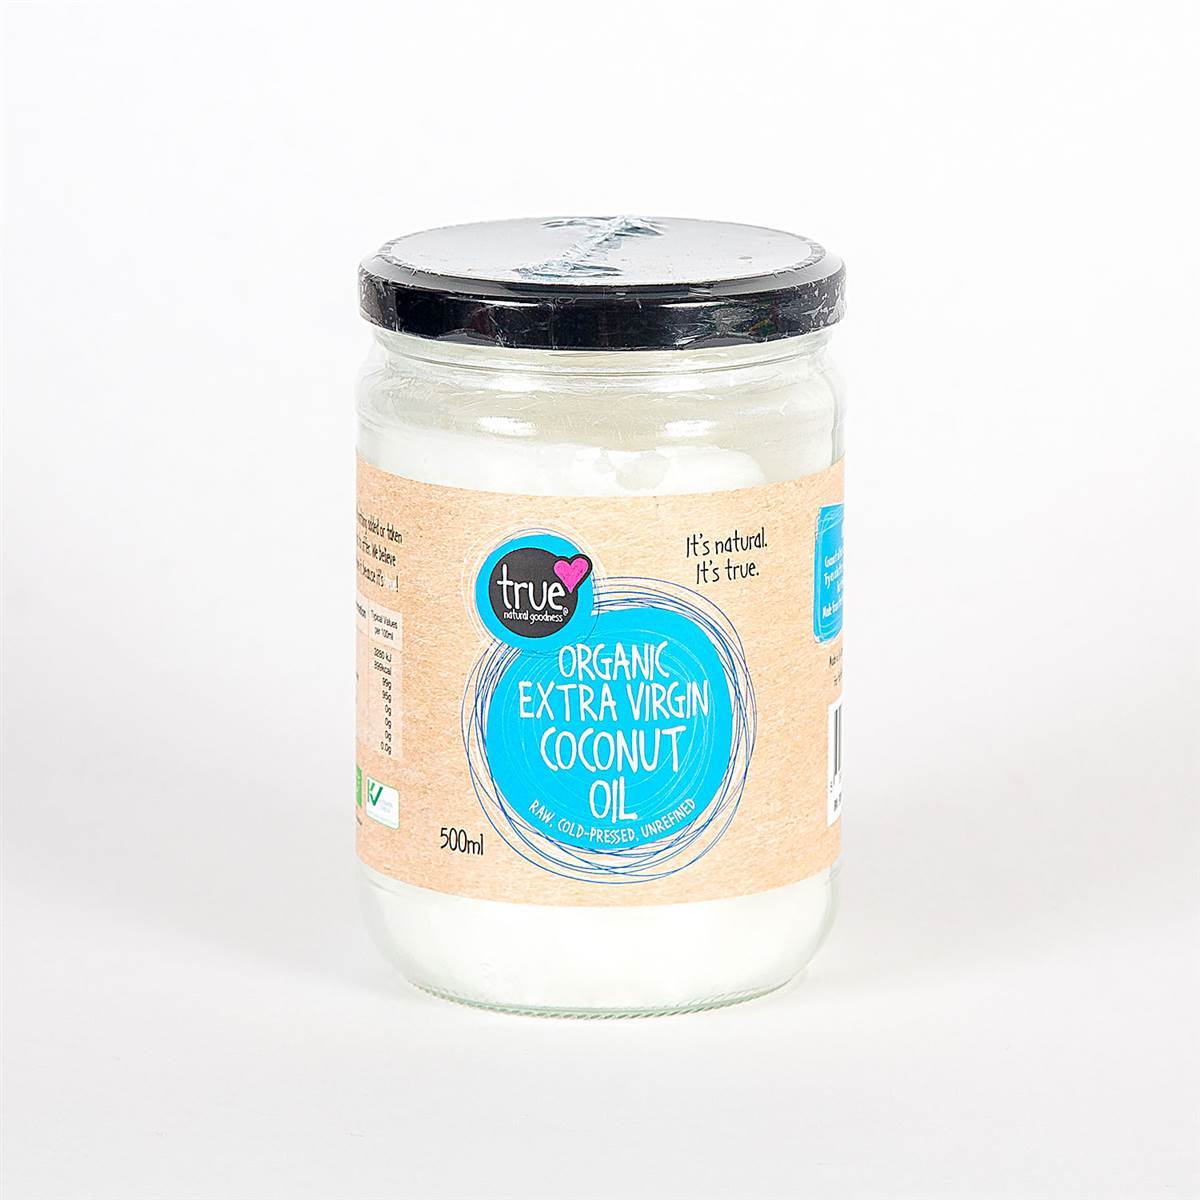 True Organic Extra Virgin Coconut Oil